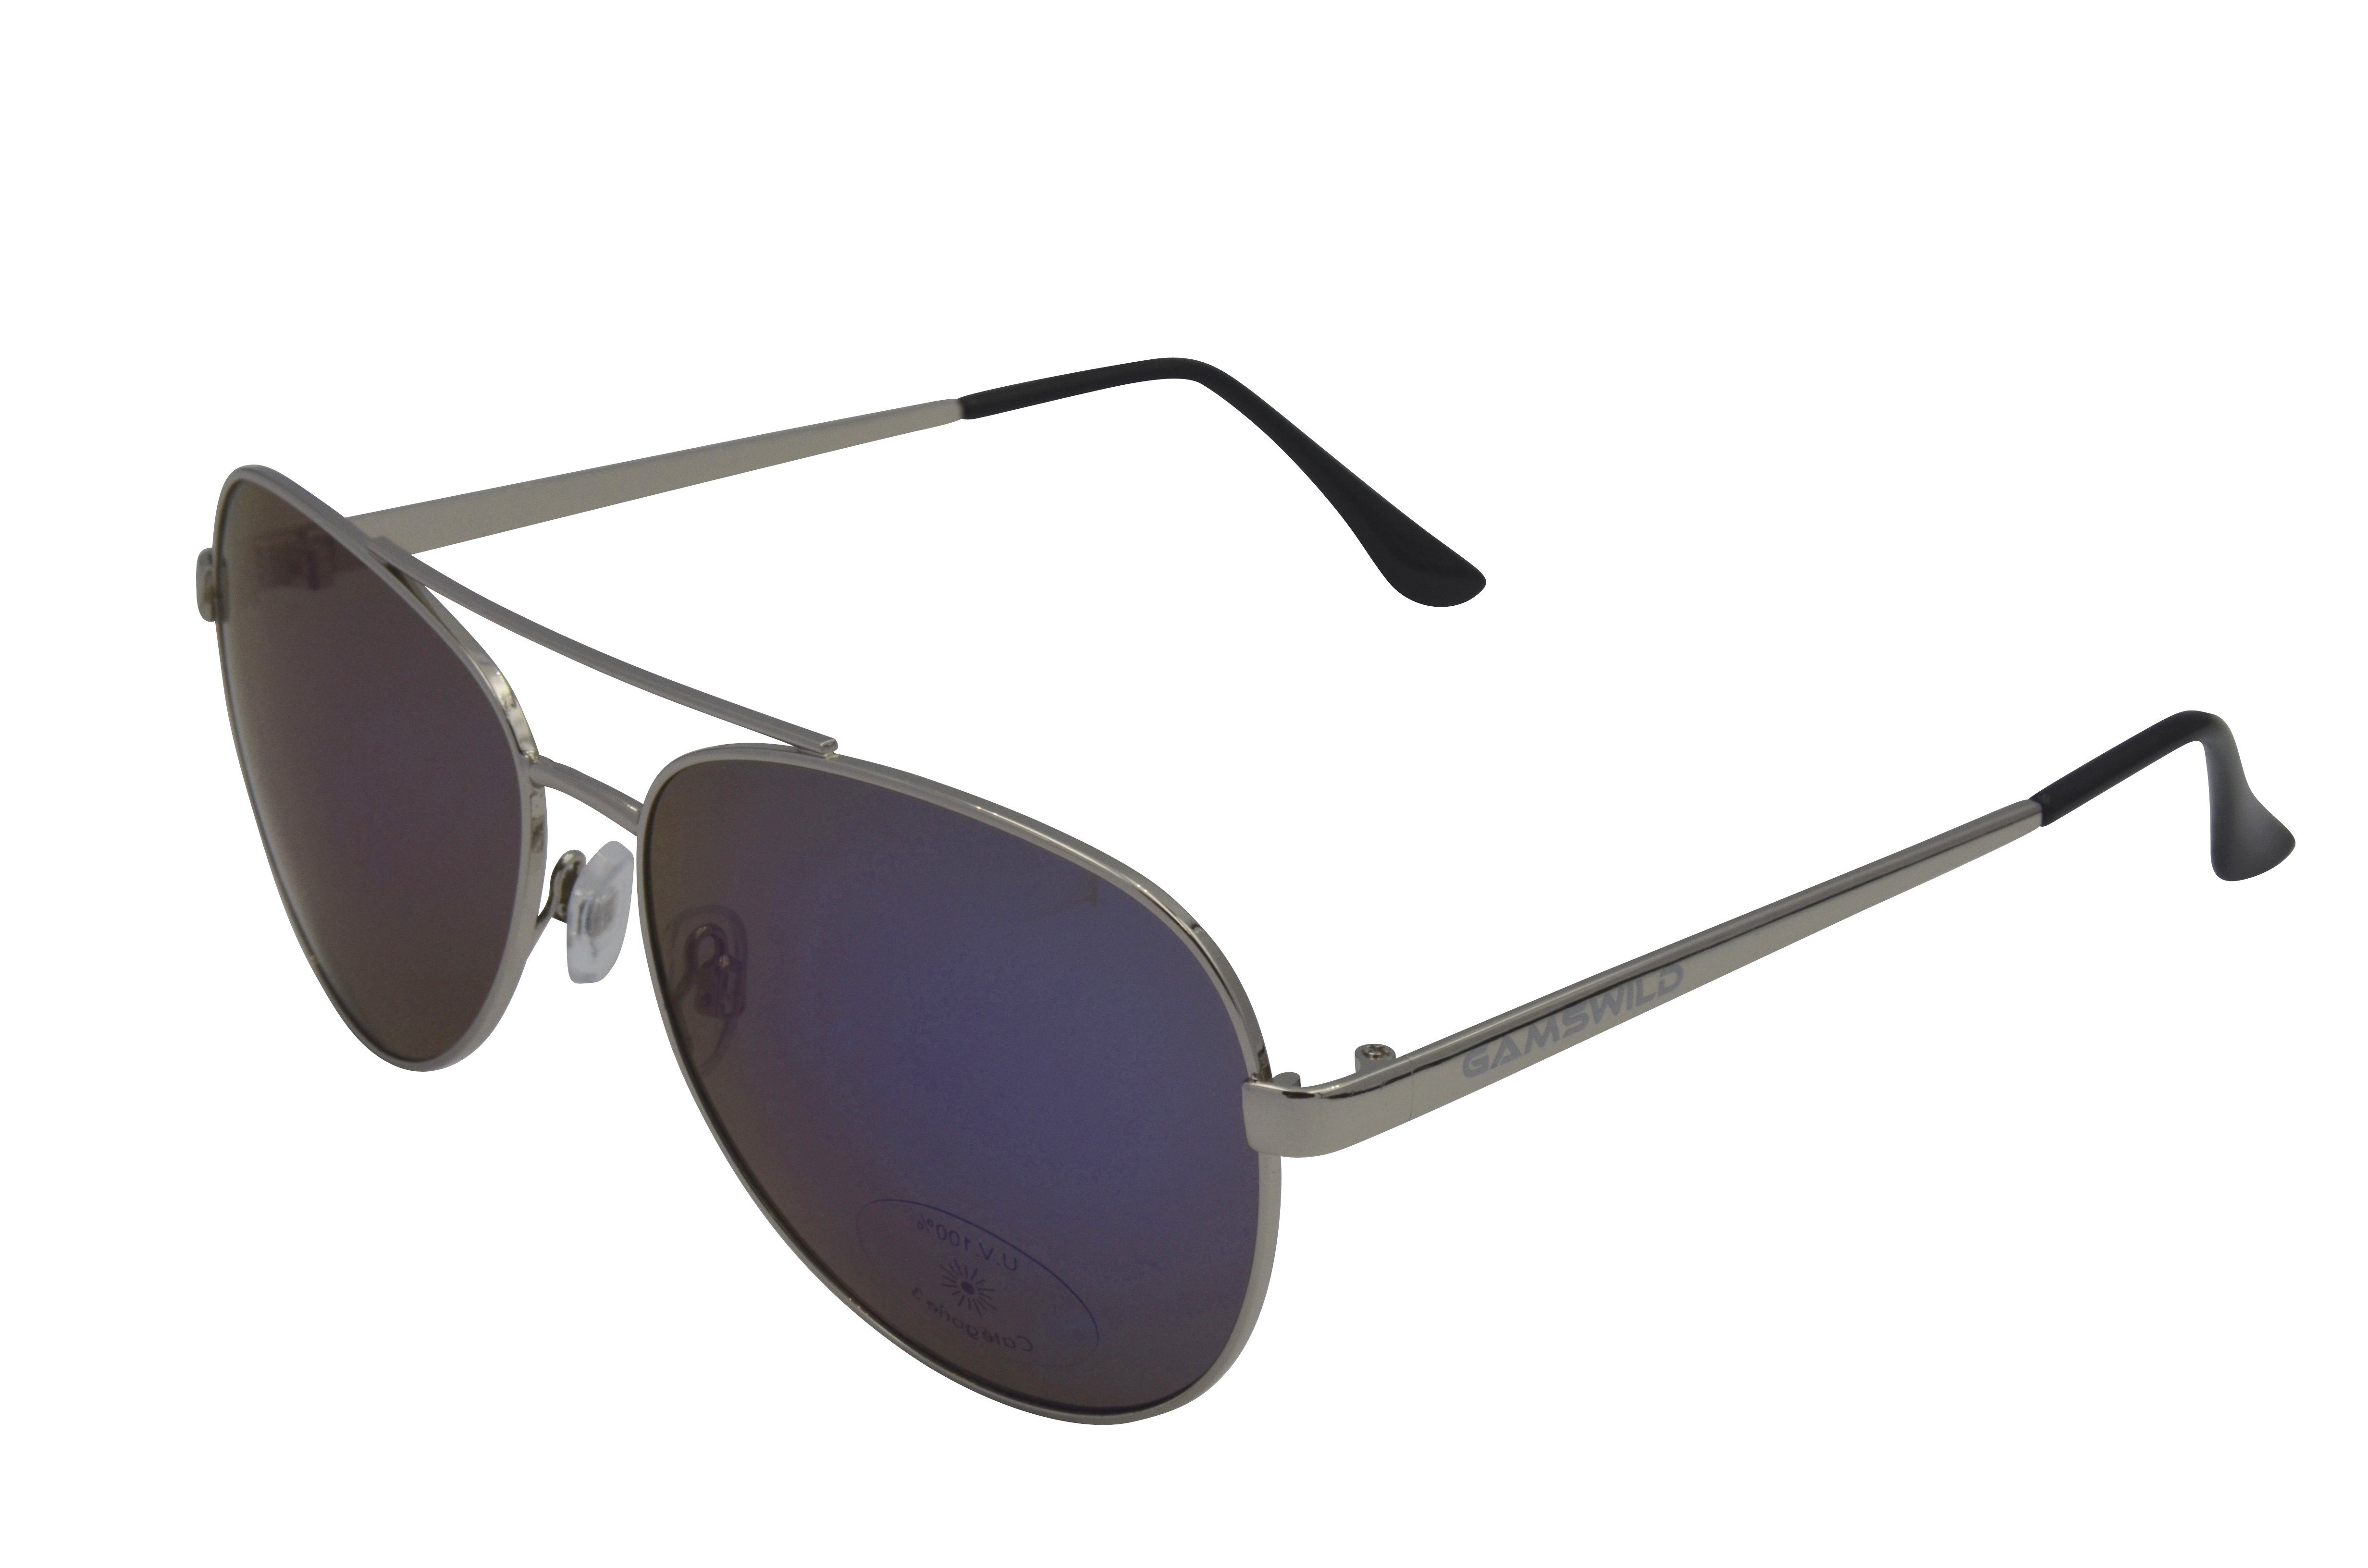 Gamswild Sonnenbrille UV400 GAMSSTYLE Modebrille Pilotenbrille Metallfassung Damen Herren Unisex Modell WM7426 in blau, goldfarben, grün